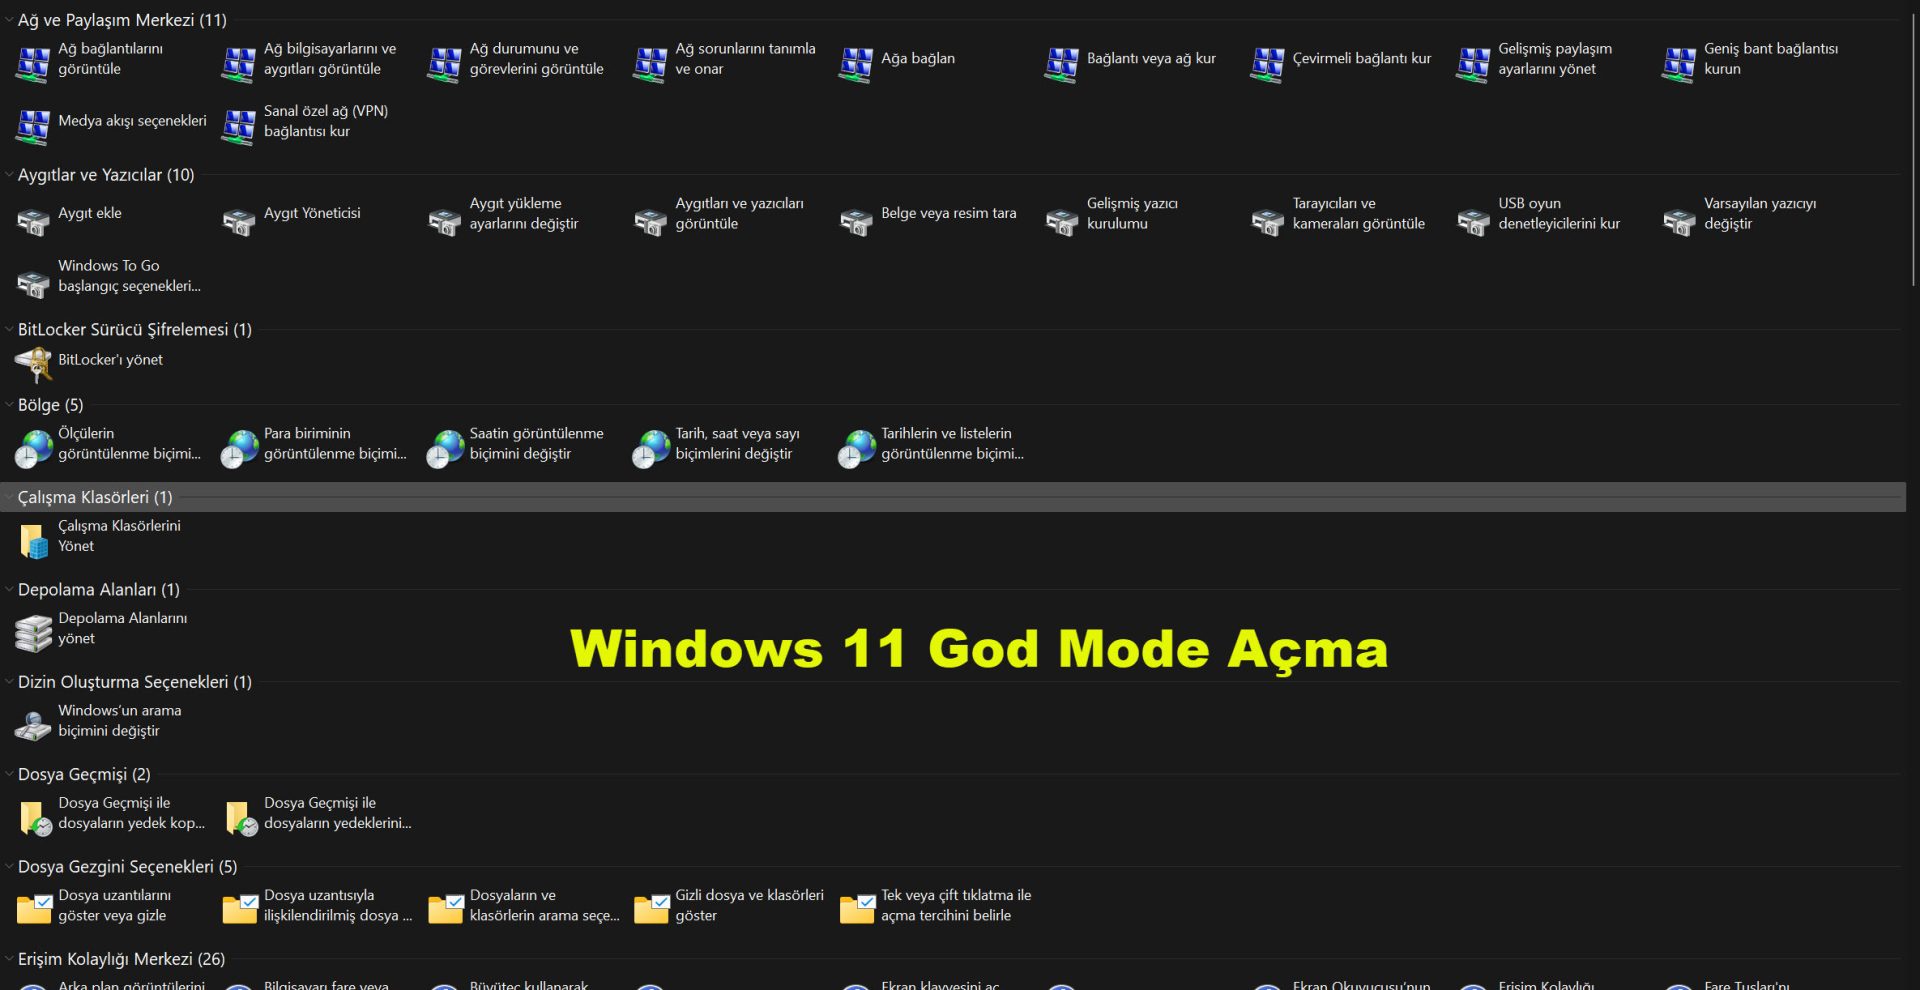 Windows 11 God Mode Acma 7